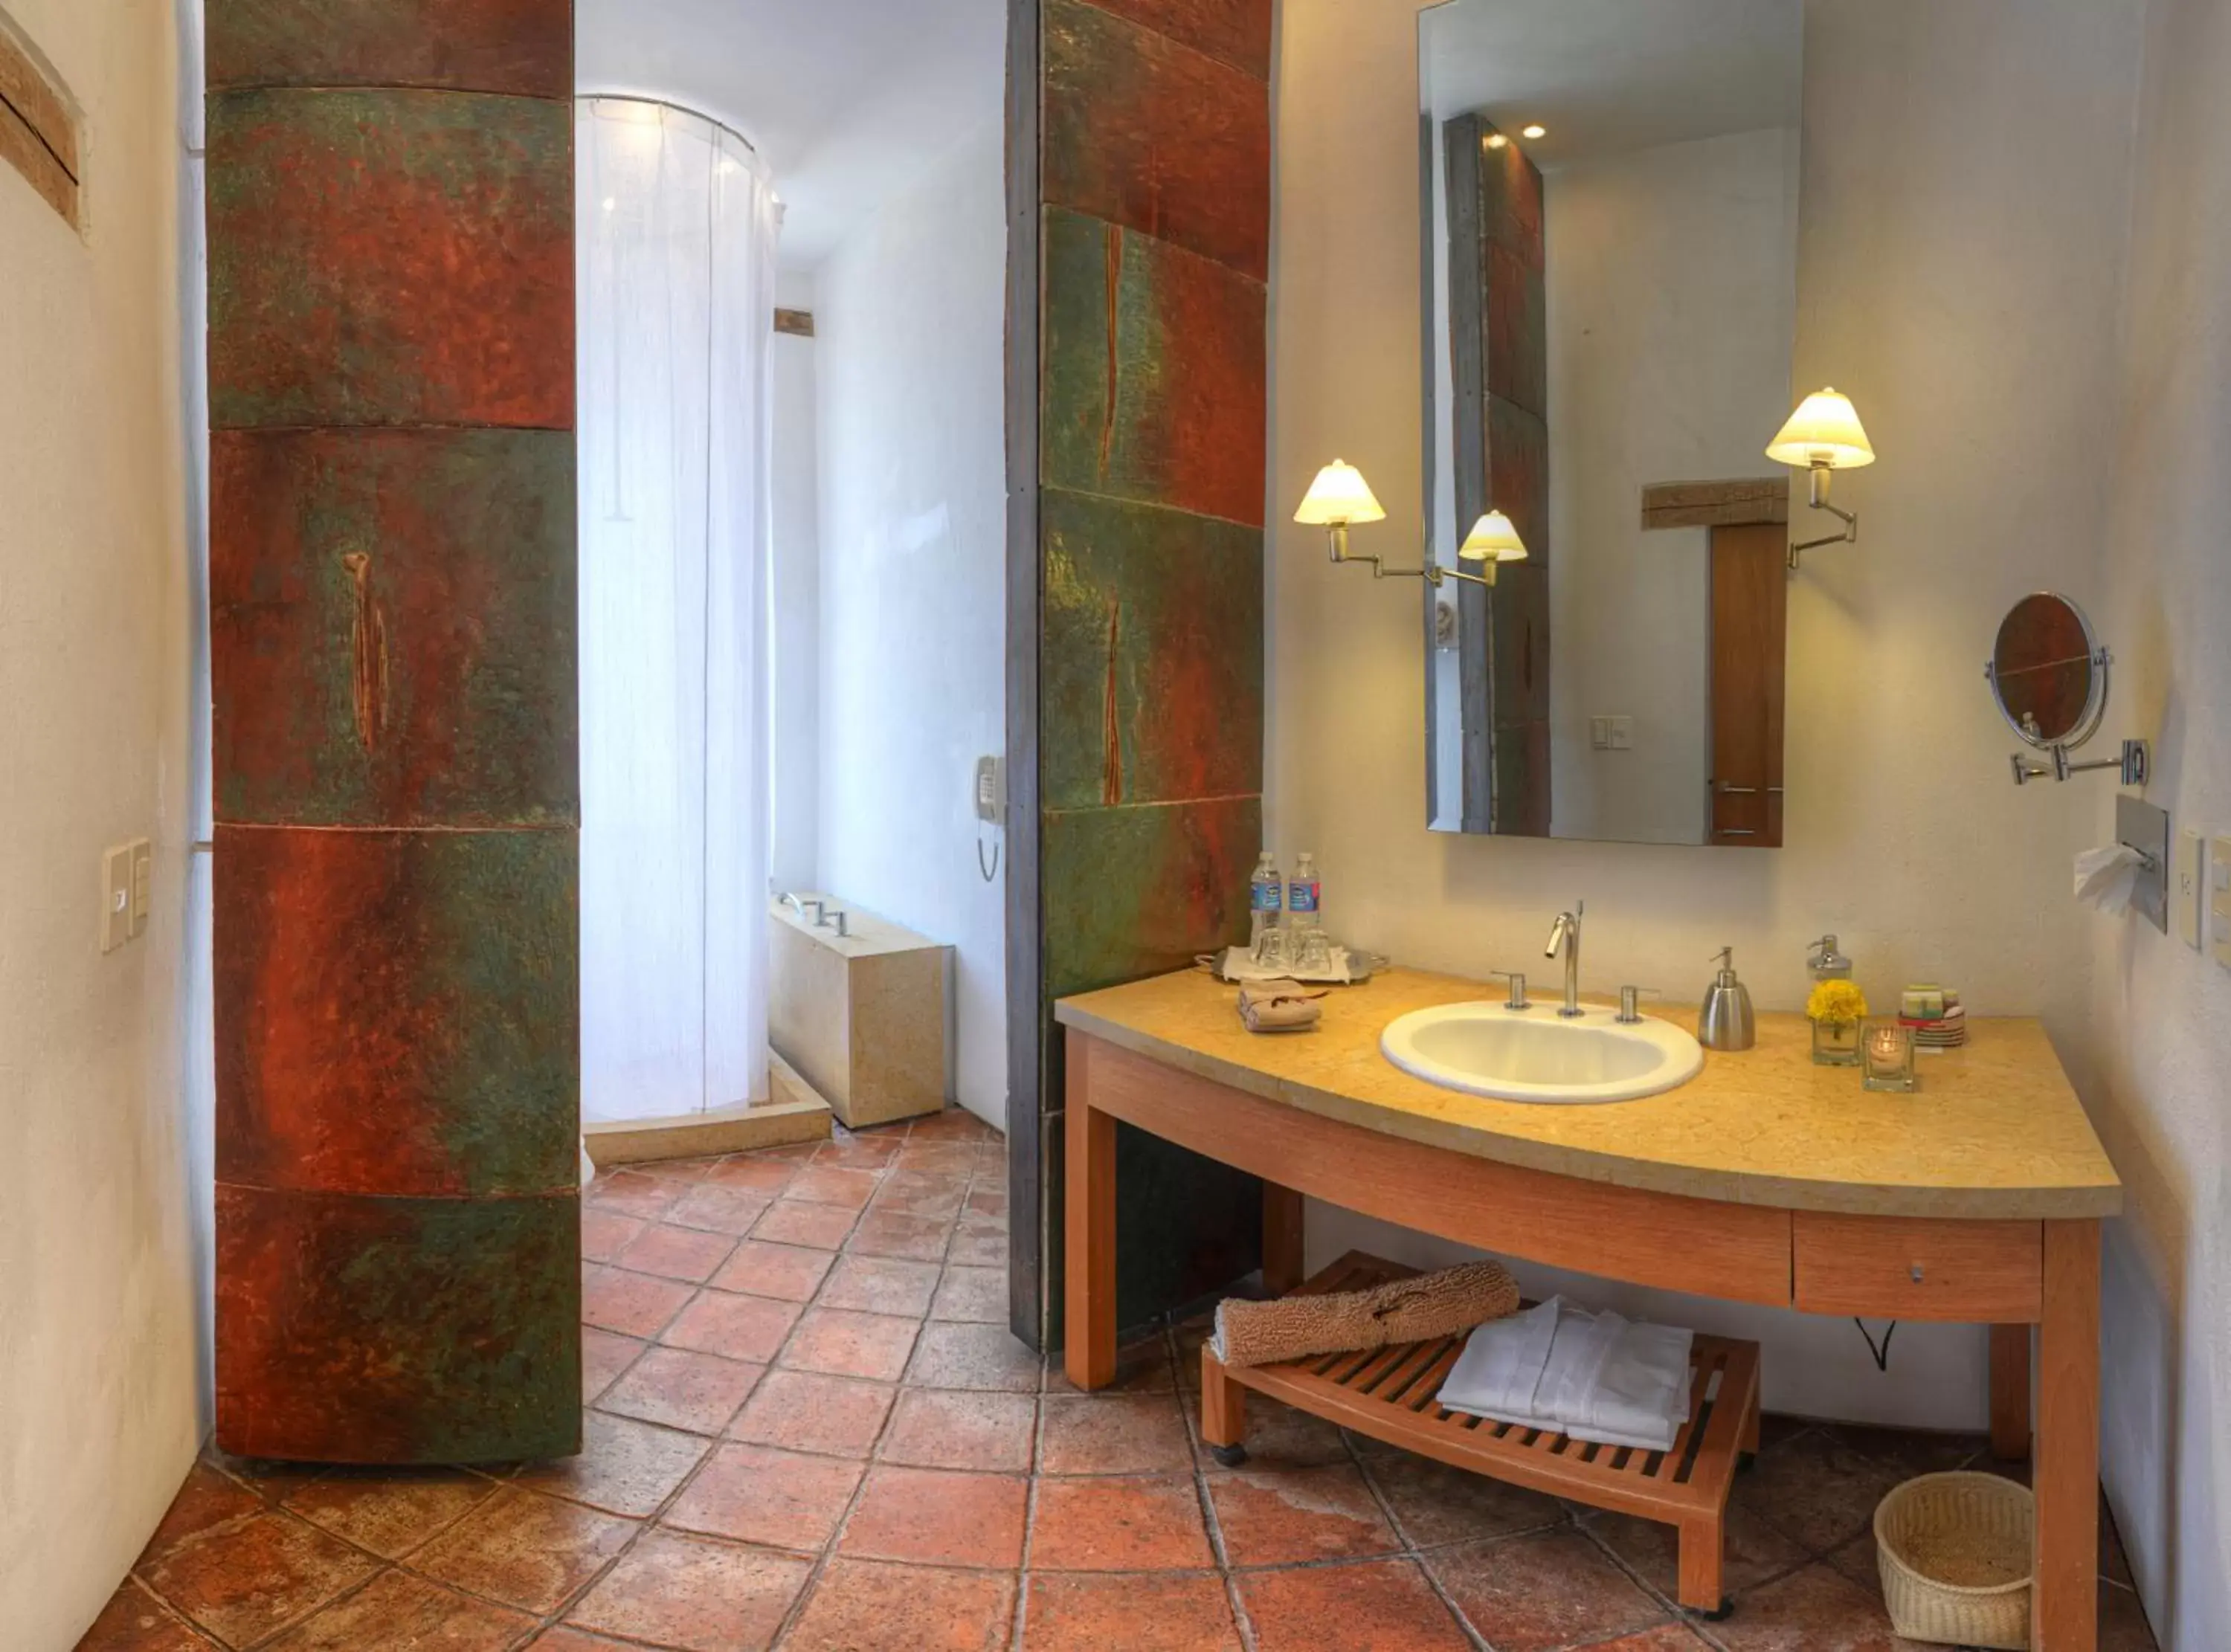 Bathroom in Hotel La Casona de Tita